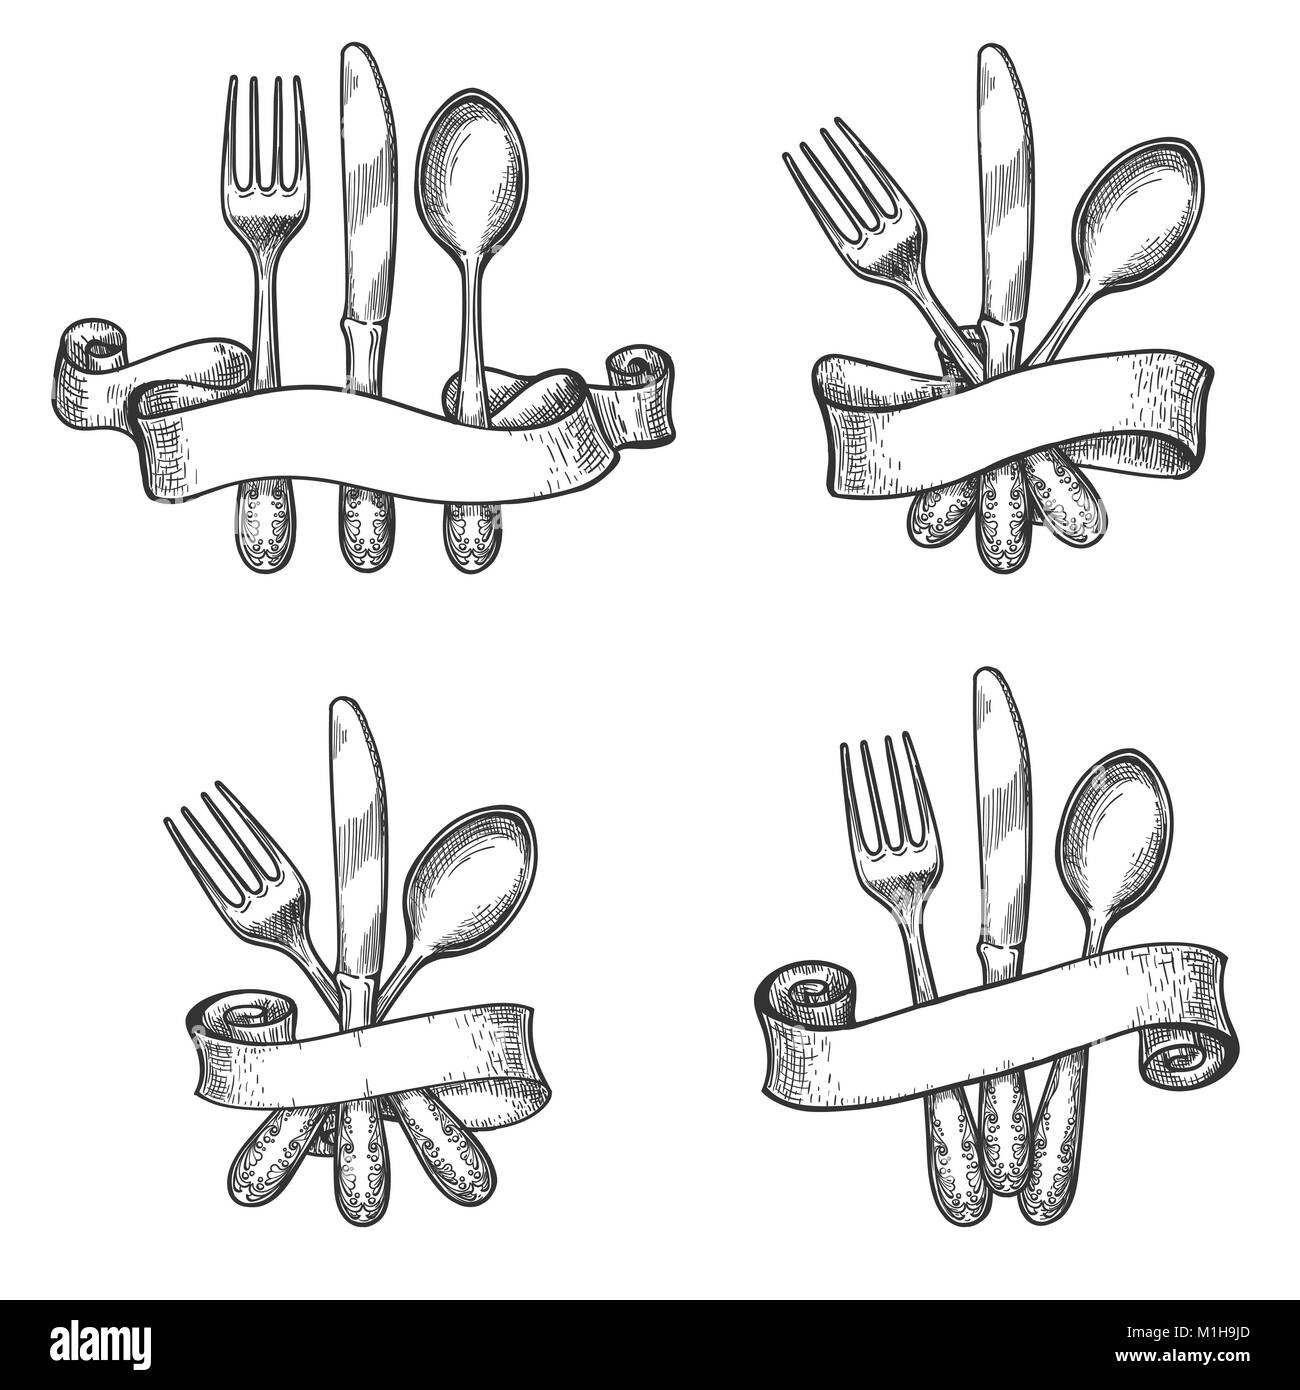 Besteck Skizze. Vintage Tisch besteck Set mit Messer und Gabel Geschirr in retro Bänder Vektor-zeichnung Stock Vektor